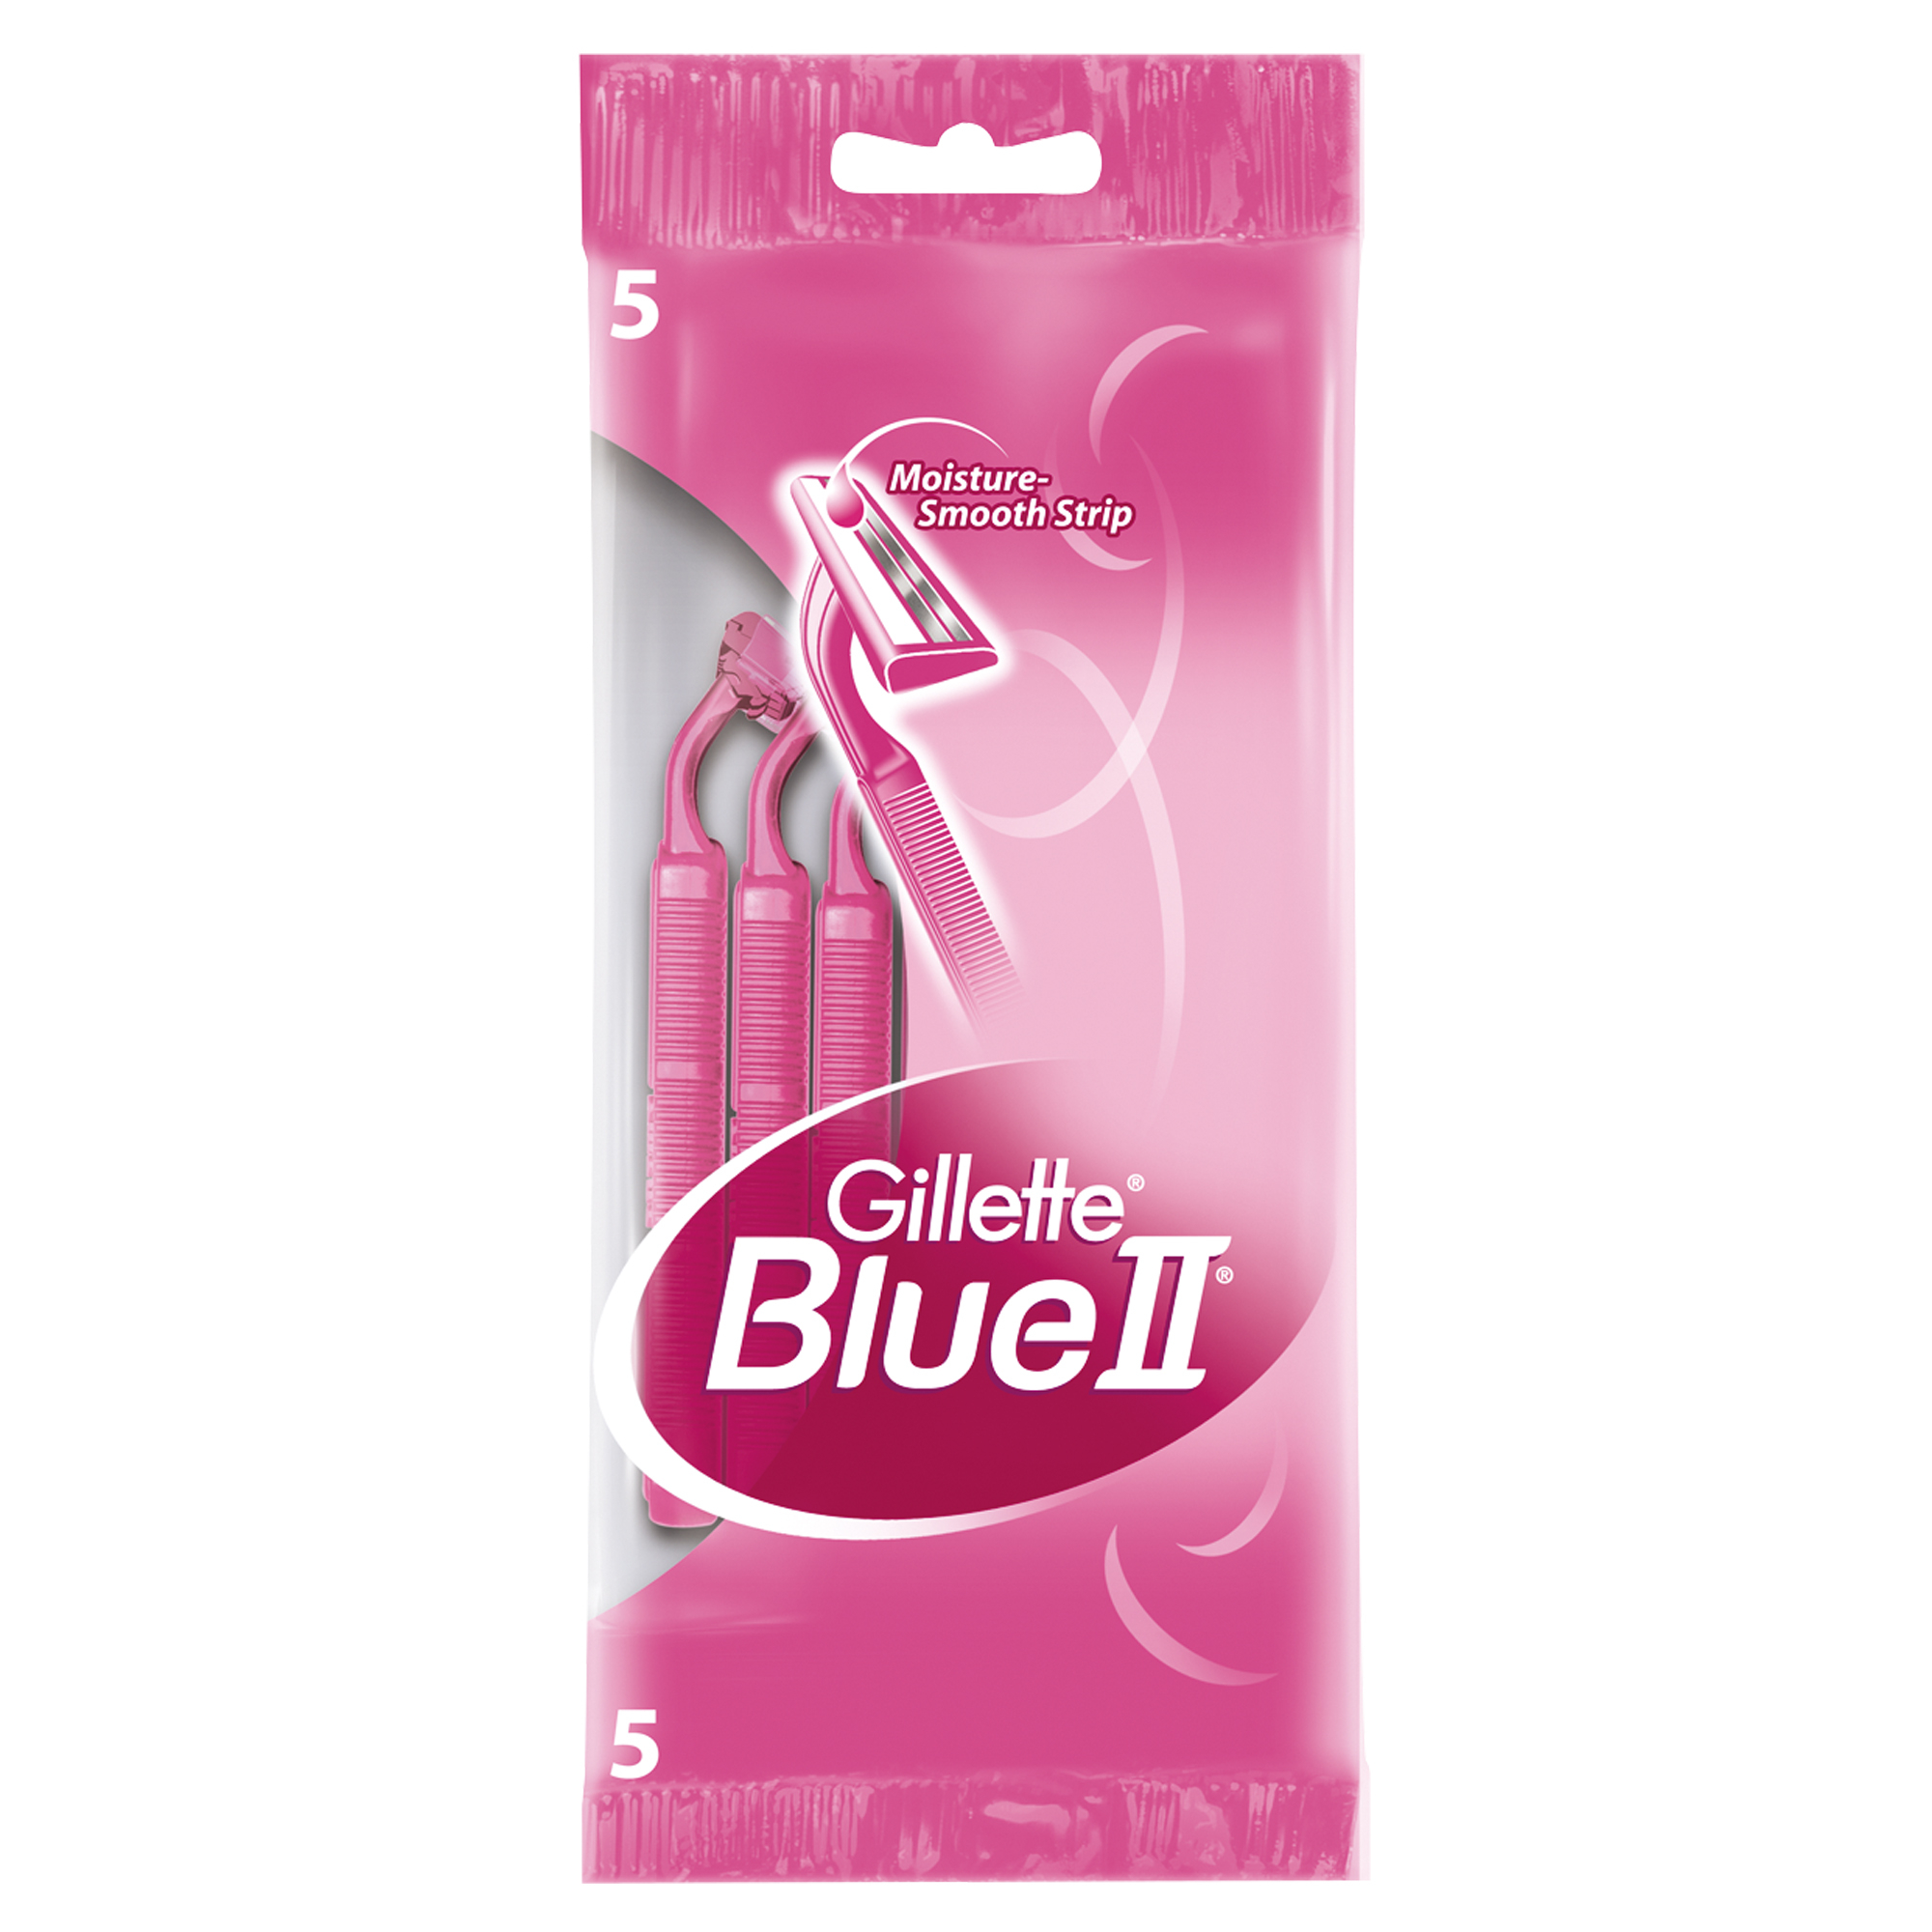 Одноразовая женская бритва Gillette Blue 2, 5 шт